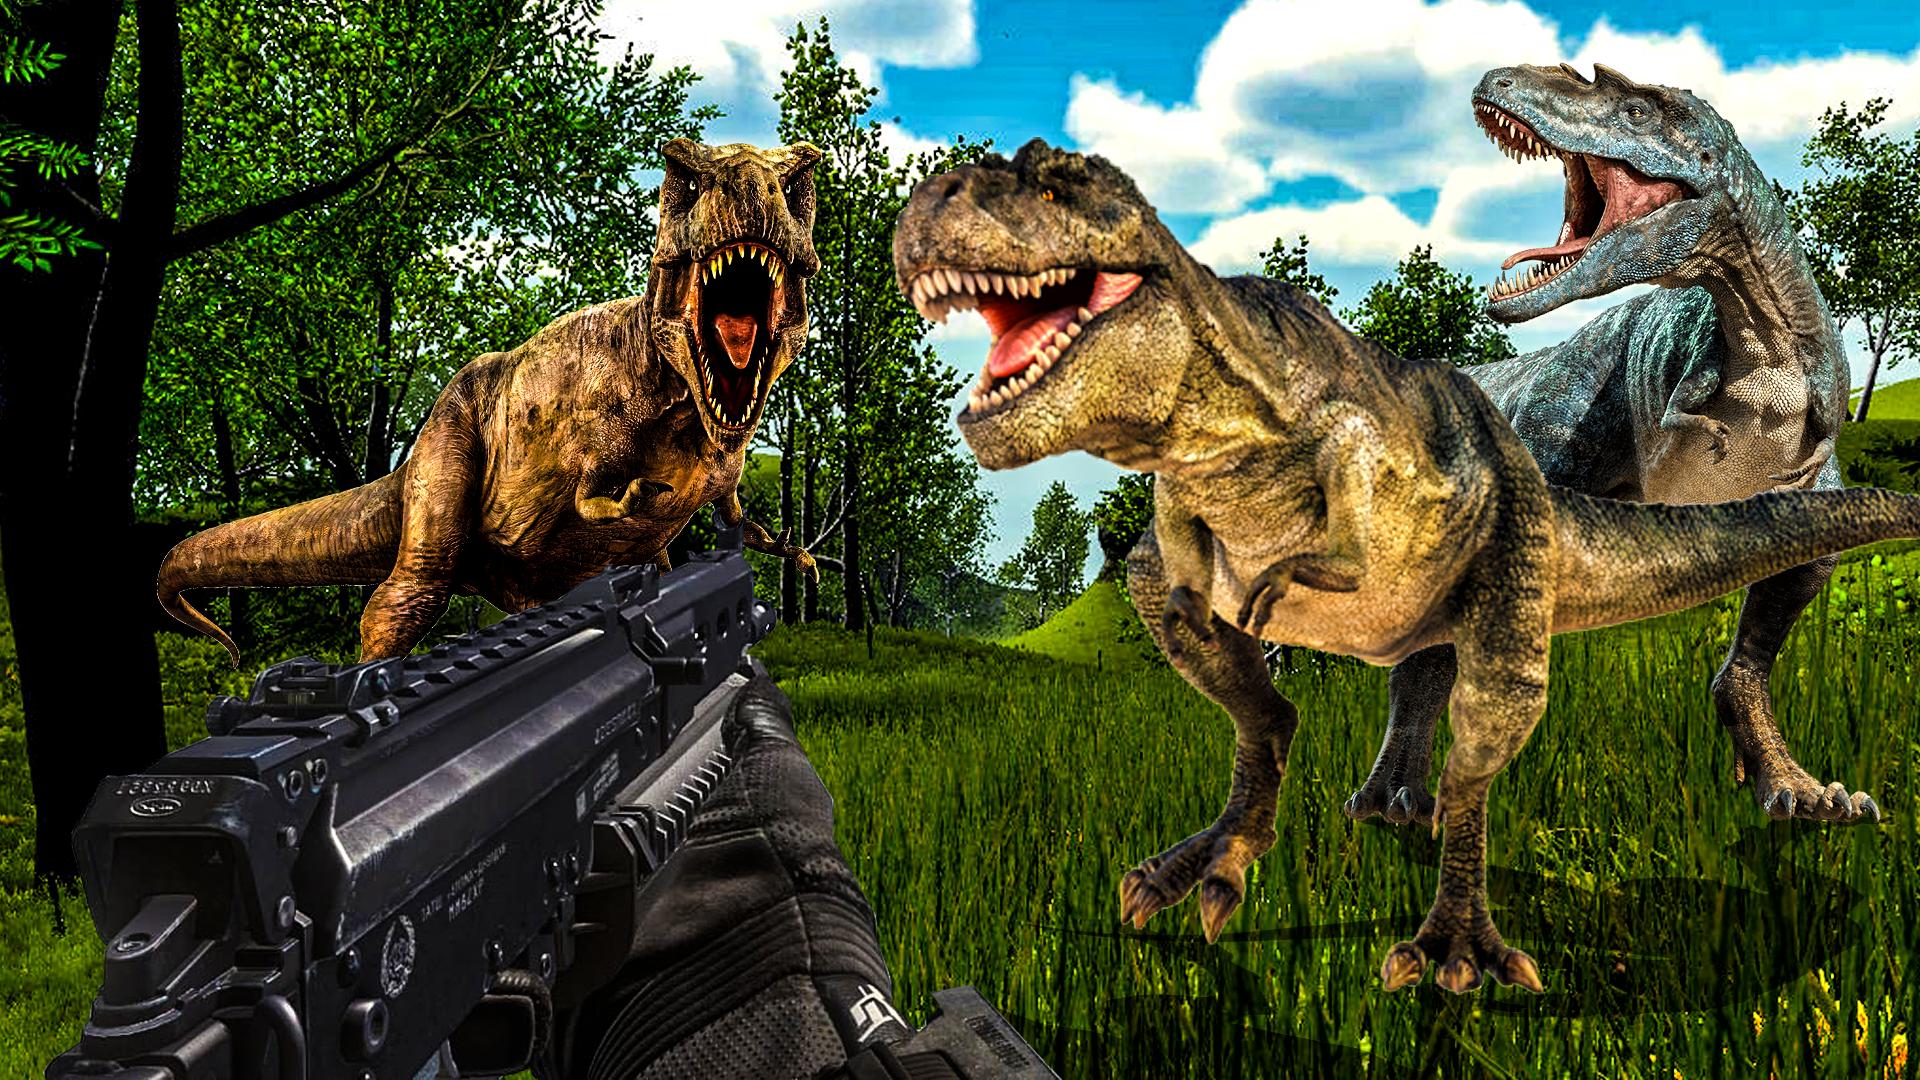 Carnivores Dino hunter game-Dinosaur game shooting 9.1 Screenshot 1